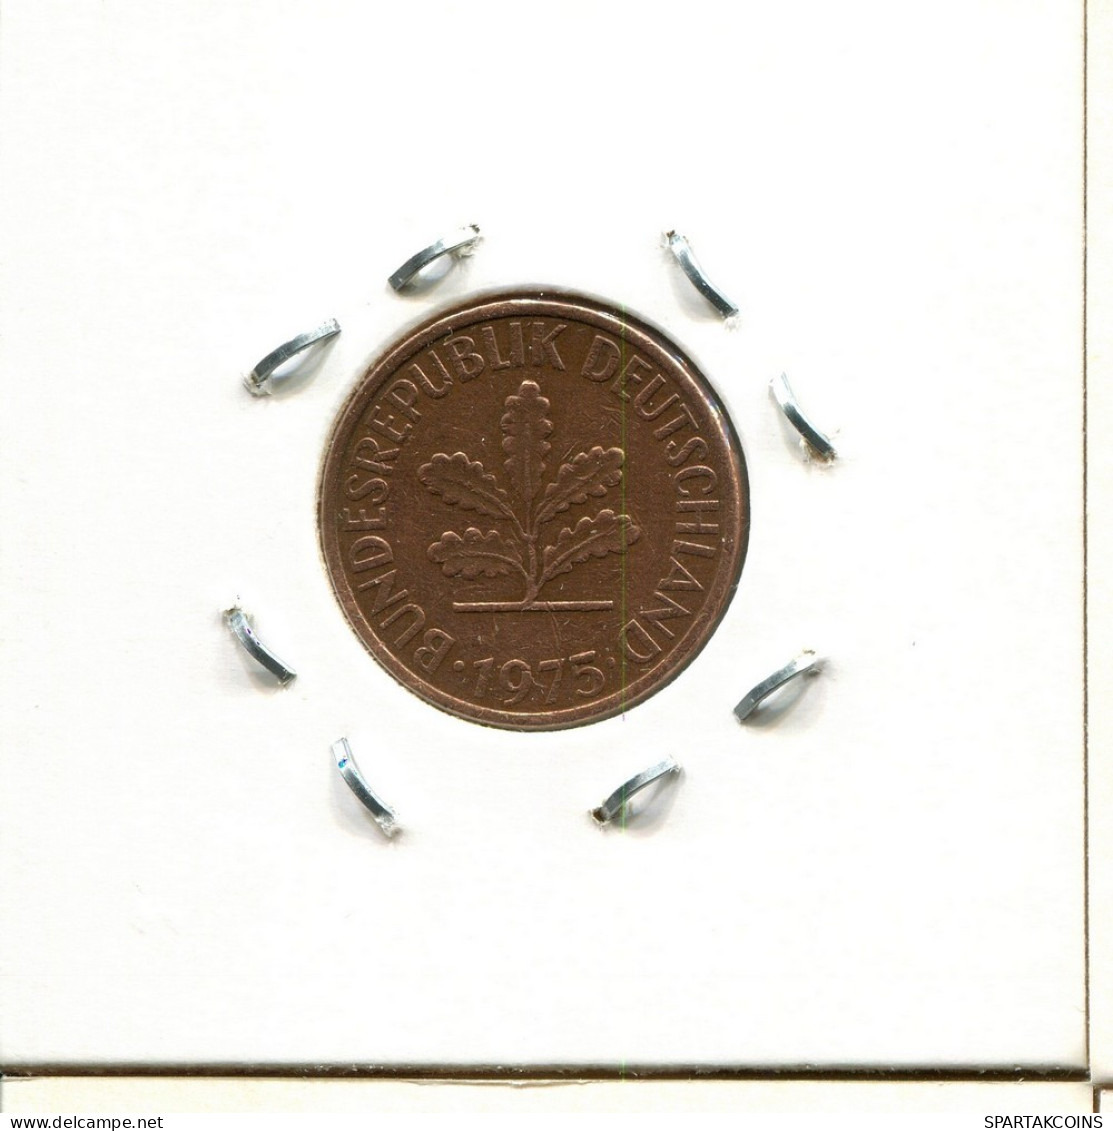 2 PFENNIG 1975 F BRD ALEMANIA Moneda GERMANY #DC235.E.A - 2 Pfennig